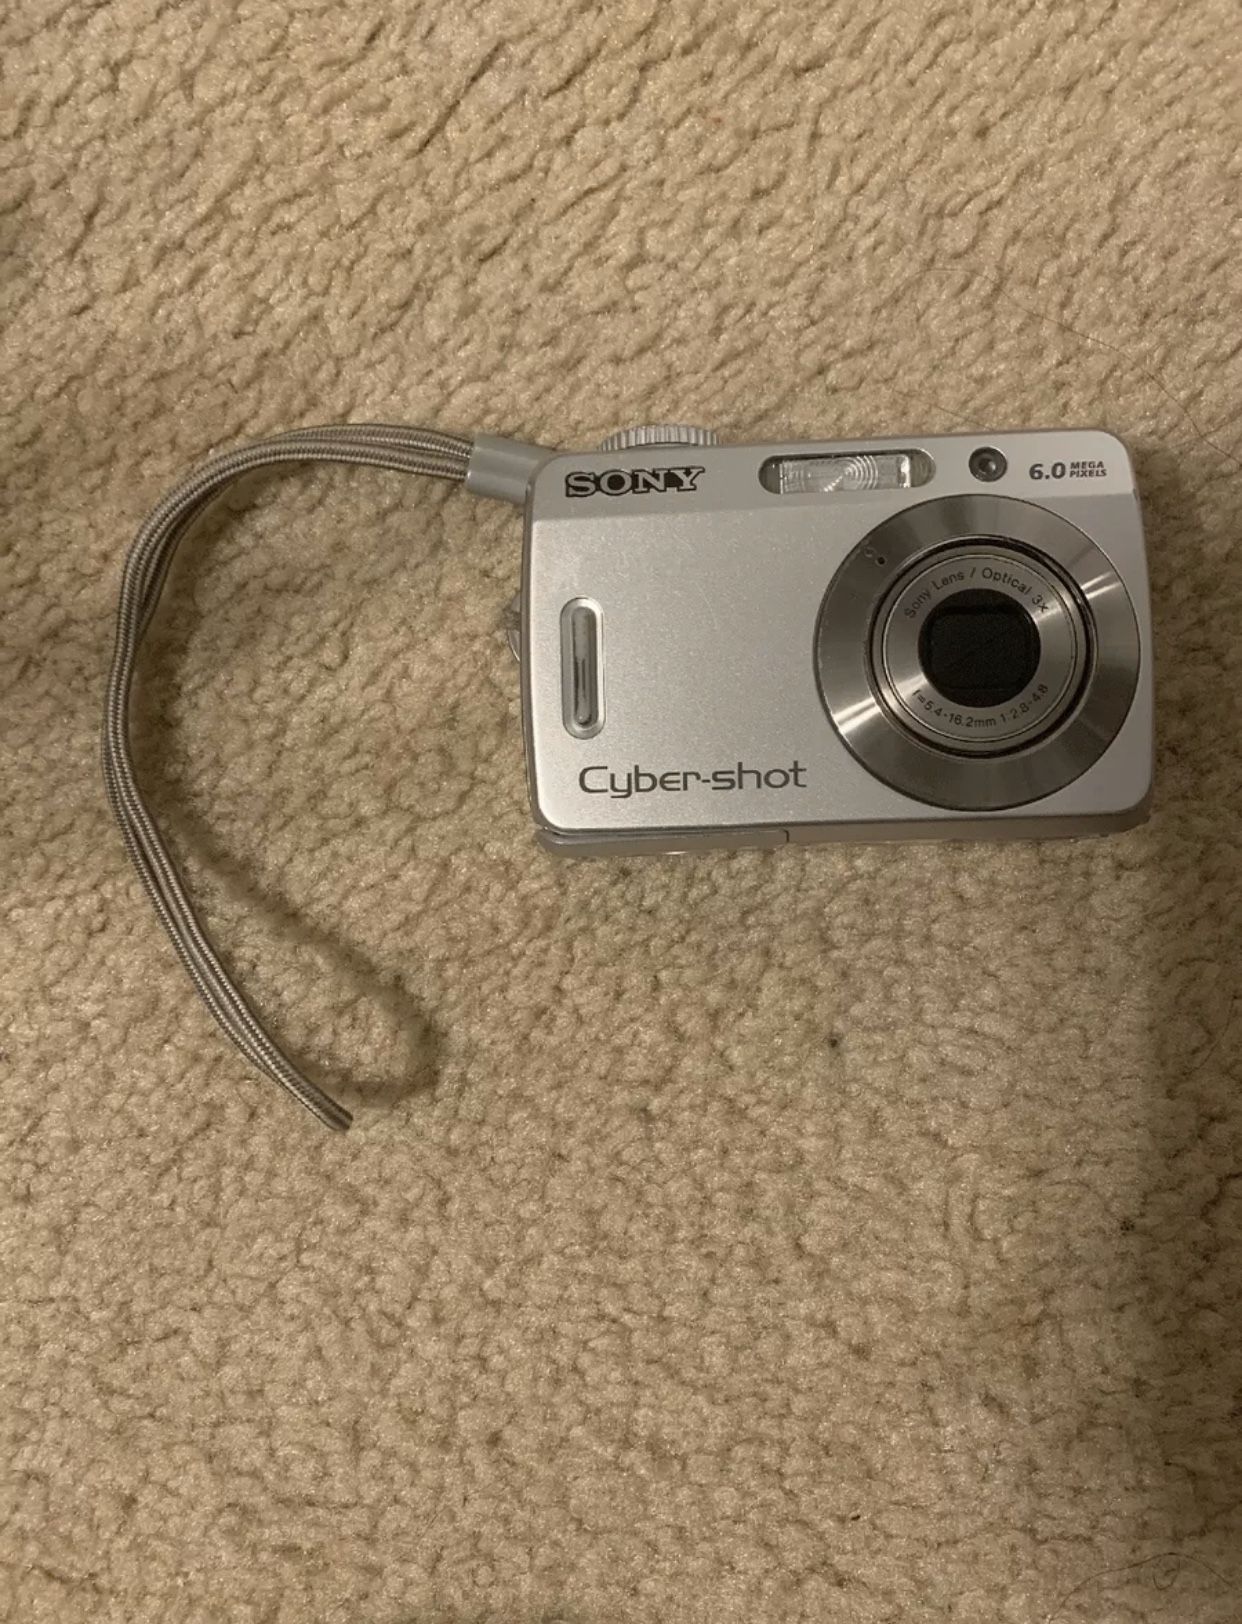 Sony Cyber-shot DSC-S500 6.0MP Digital Camera - Silver